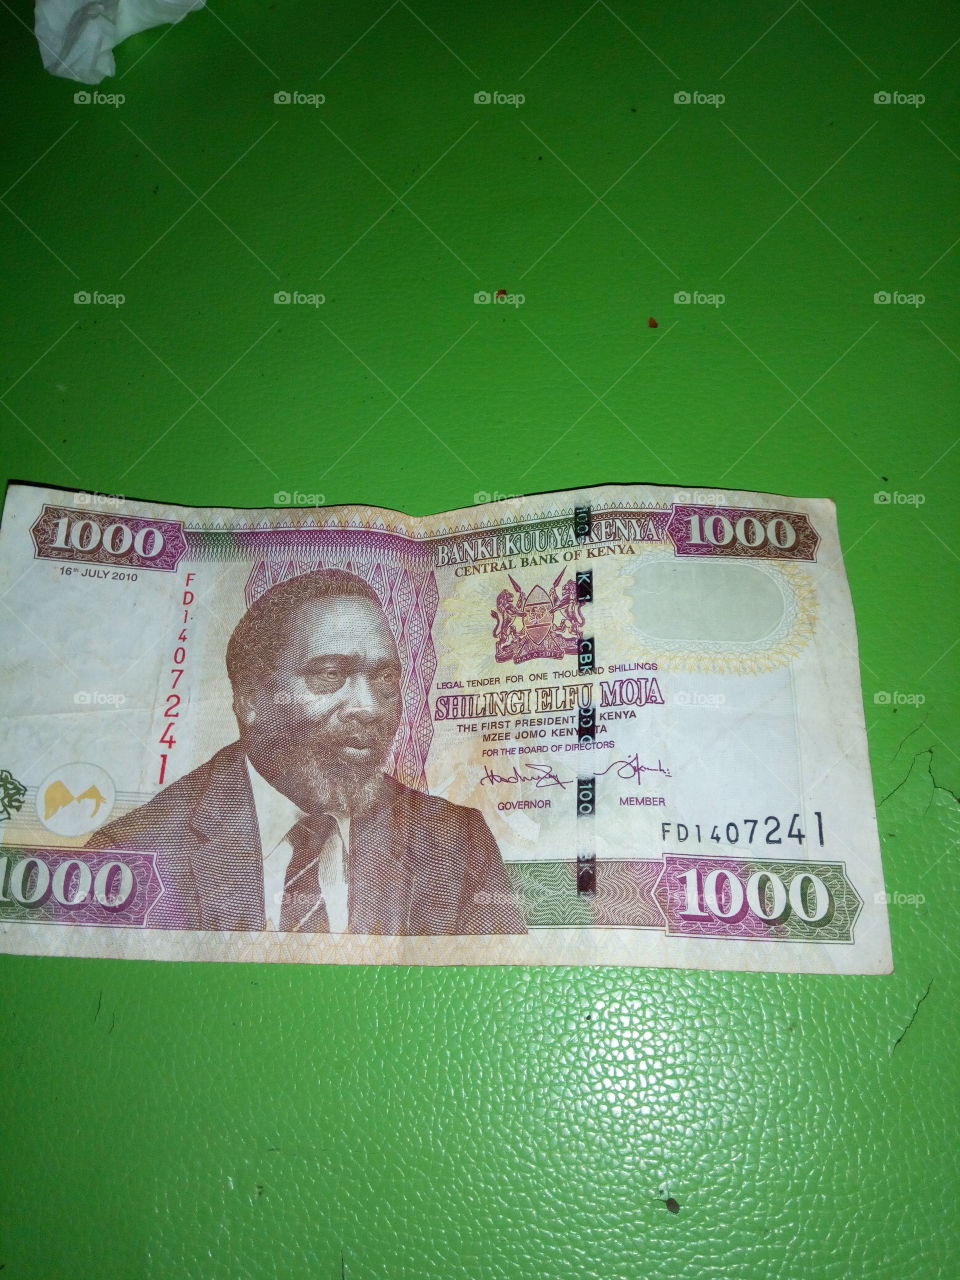 kenya currency